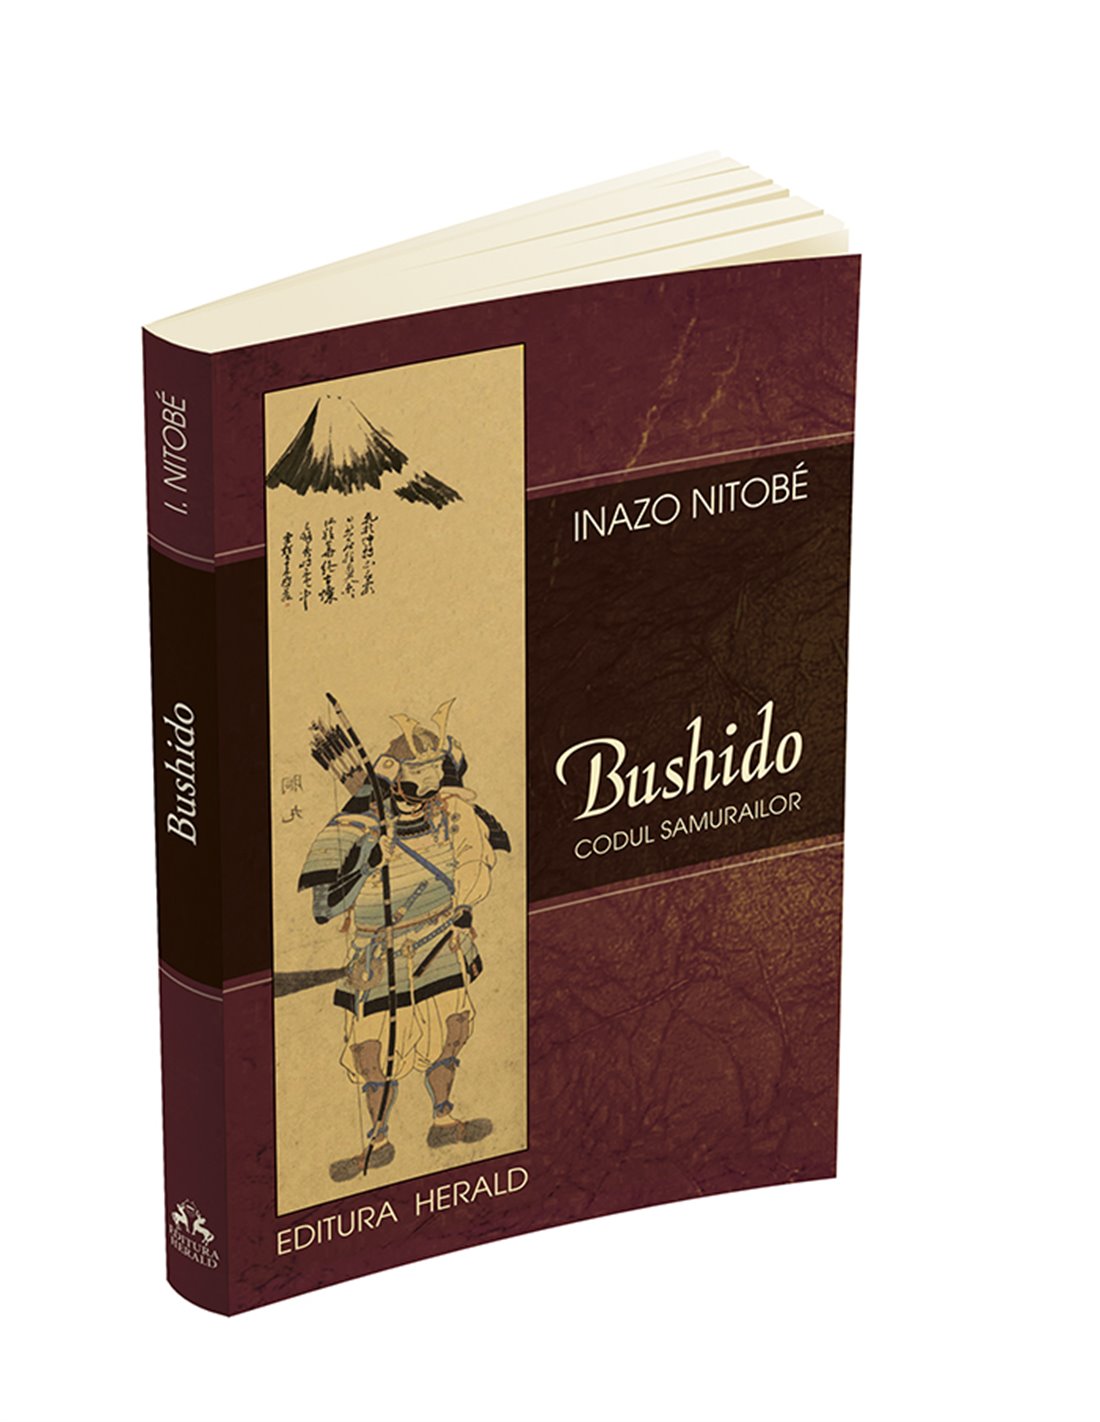 Bushido - Codul Samurailor - Inazo Nitobe | Editura Herald